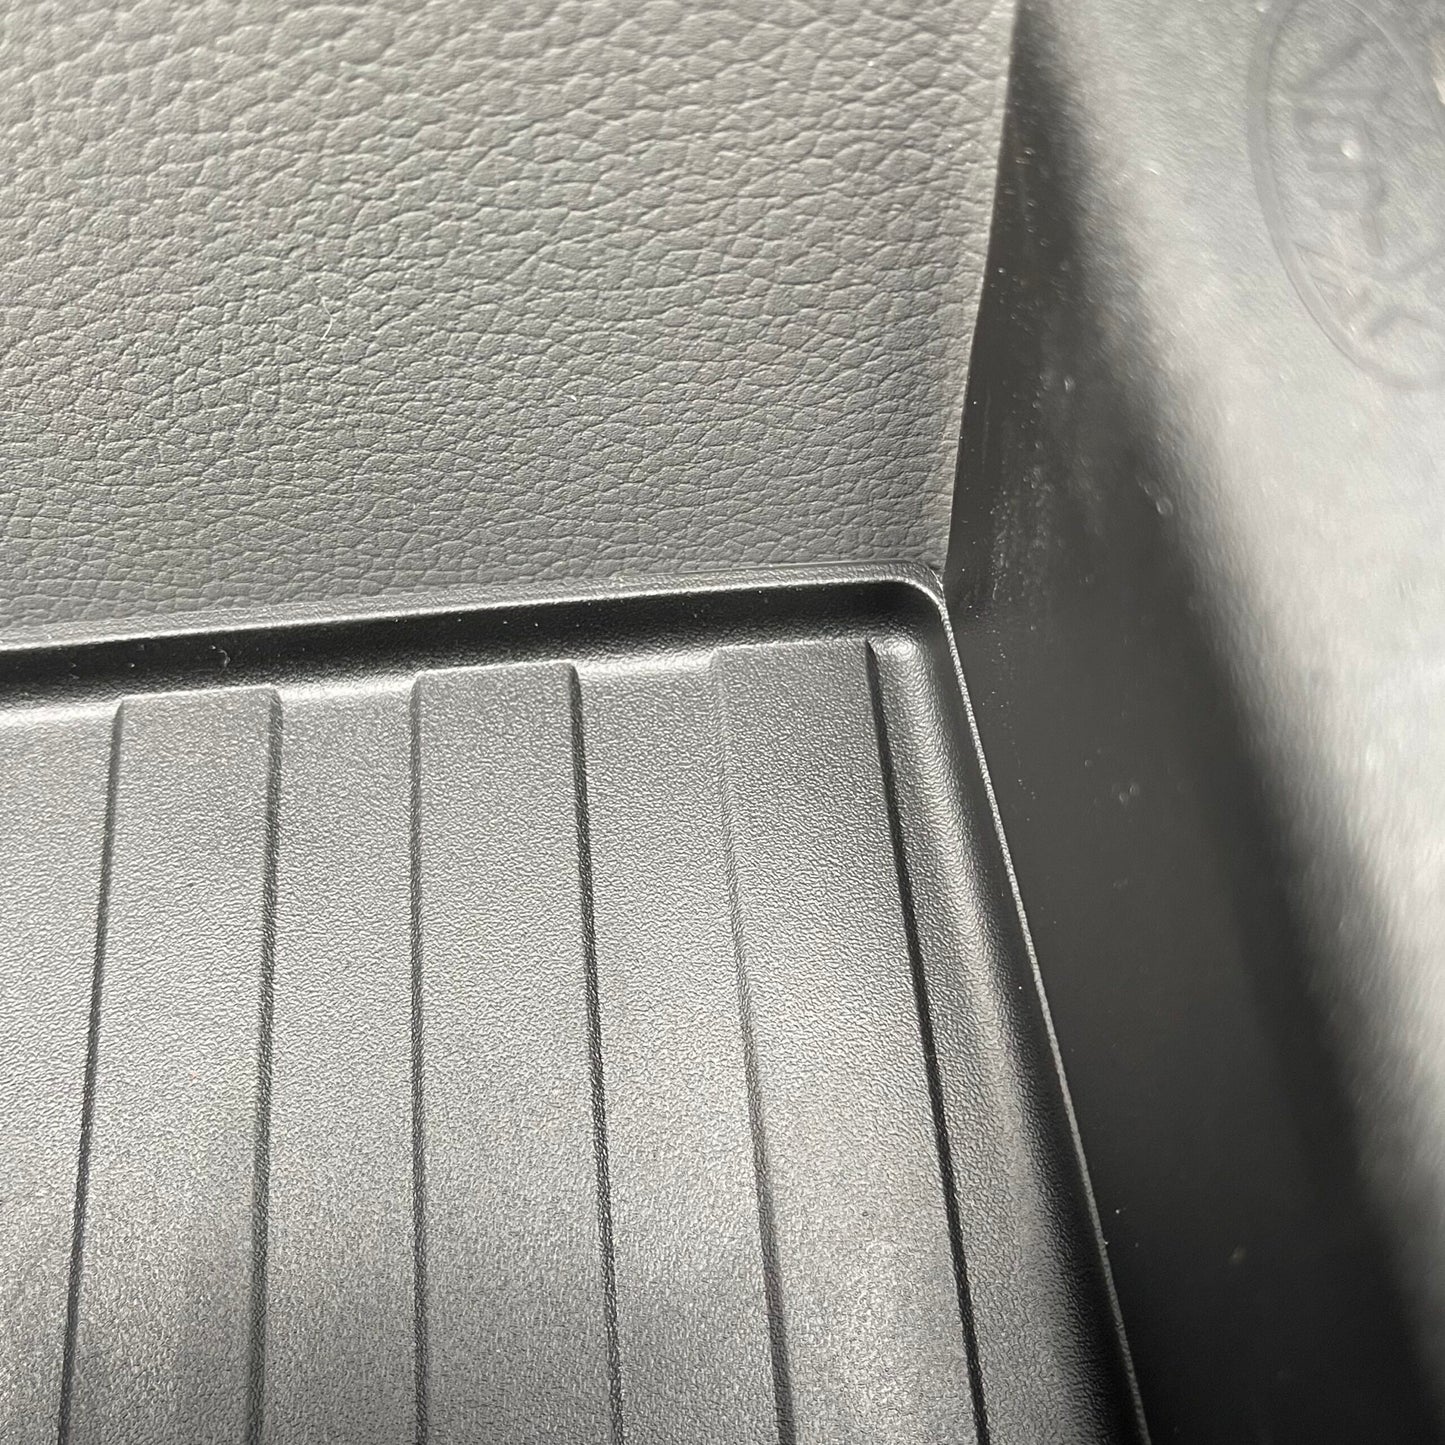 VW T6.1 Transporter Rubber Door Liner Pocket Inserts Black Campervan Conversion